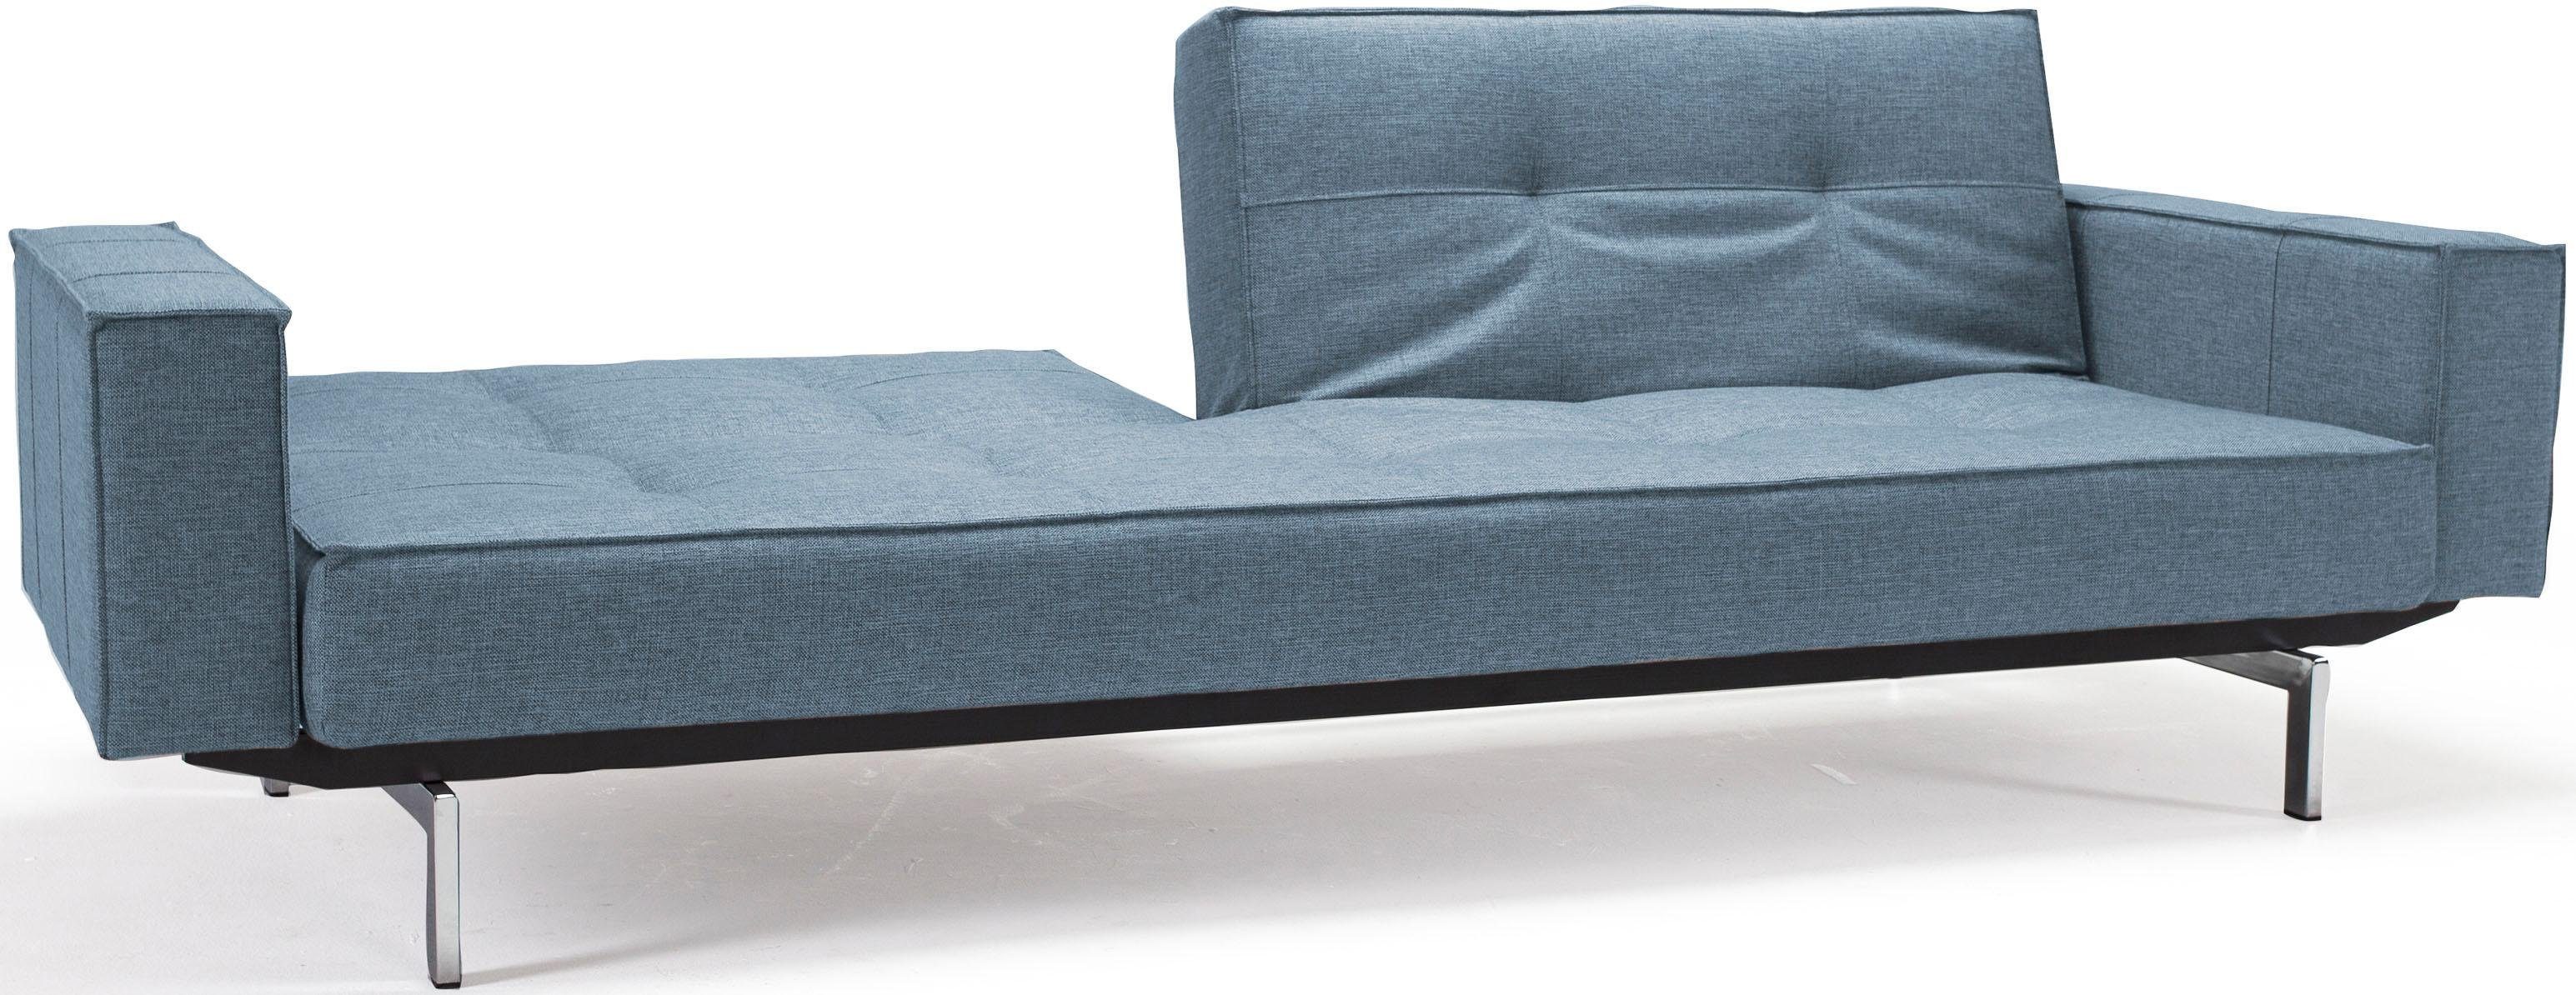 INNOVATION LIVING ™ Armlehne Beinen, mit Sofa und in Splitback, Design chromglänzenden skandinavischen